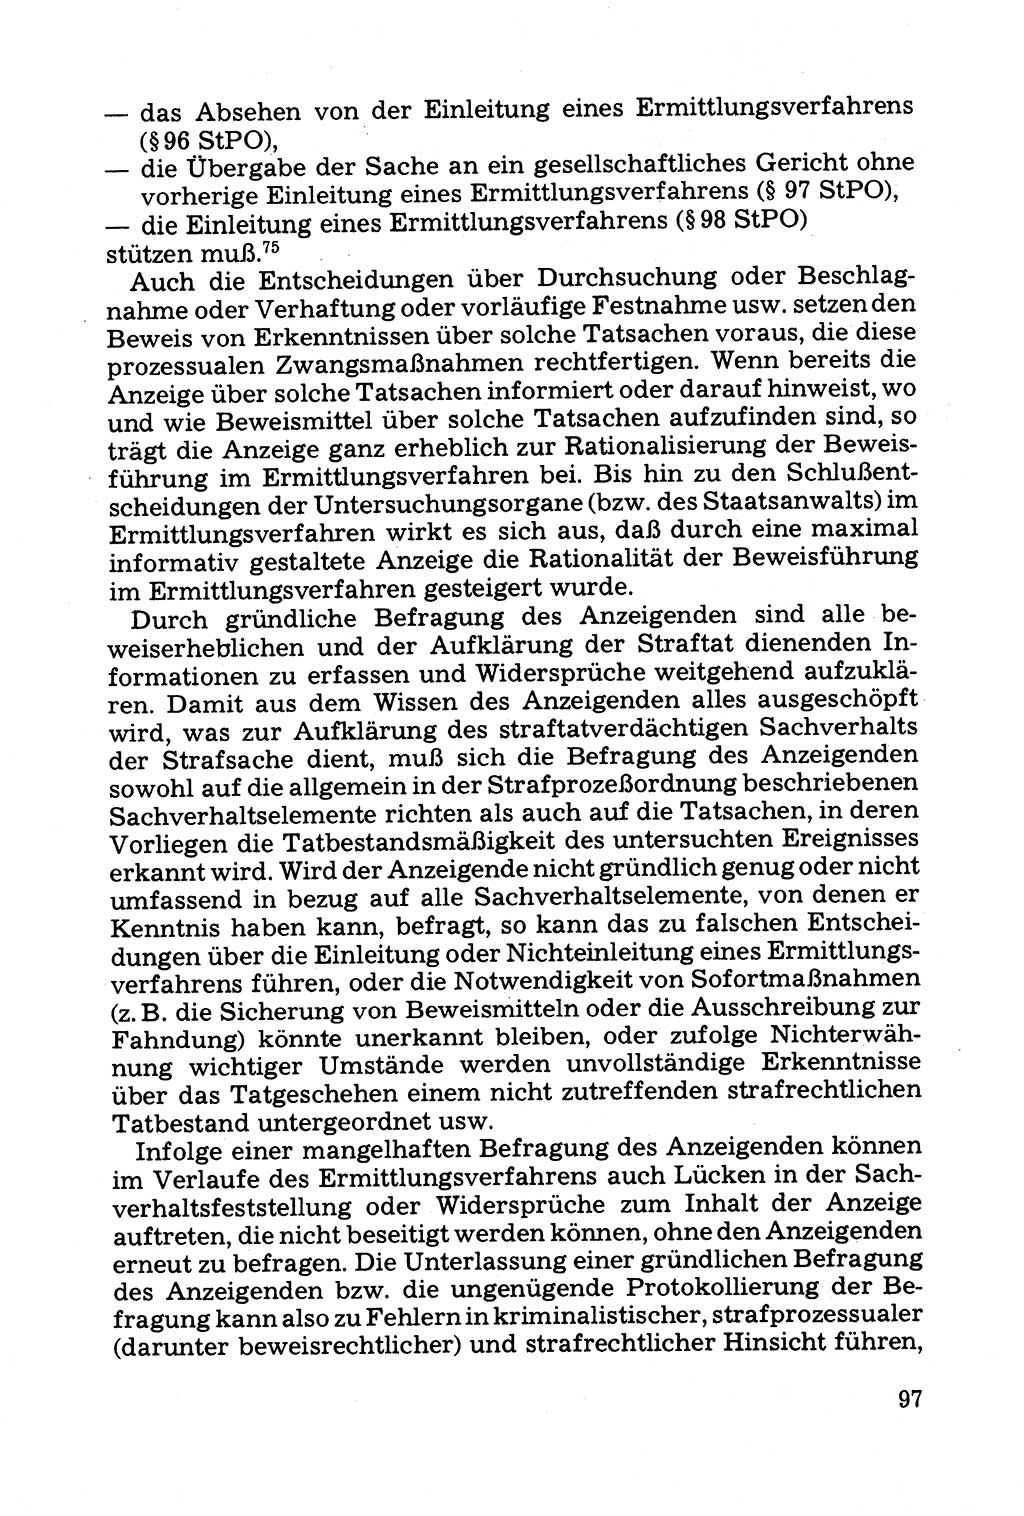 Grundfragen der Beweisführung im Ermittlungsverfahren [Deutsche Demokratische Republik (DDR)] 1980, Seite 97 (Bws.-Fhrg. EV DDR 1980, S. 97)